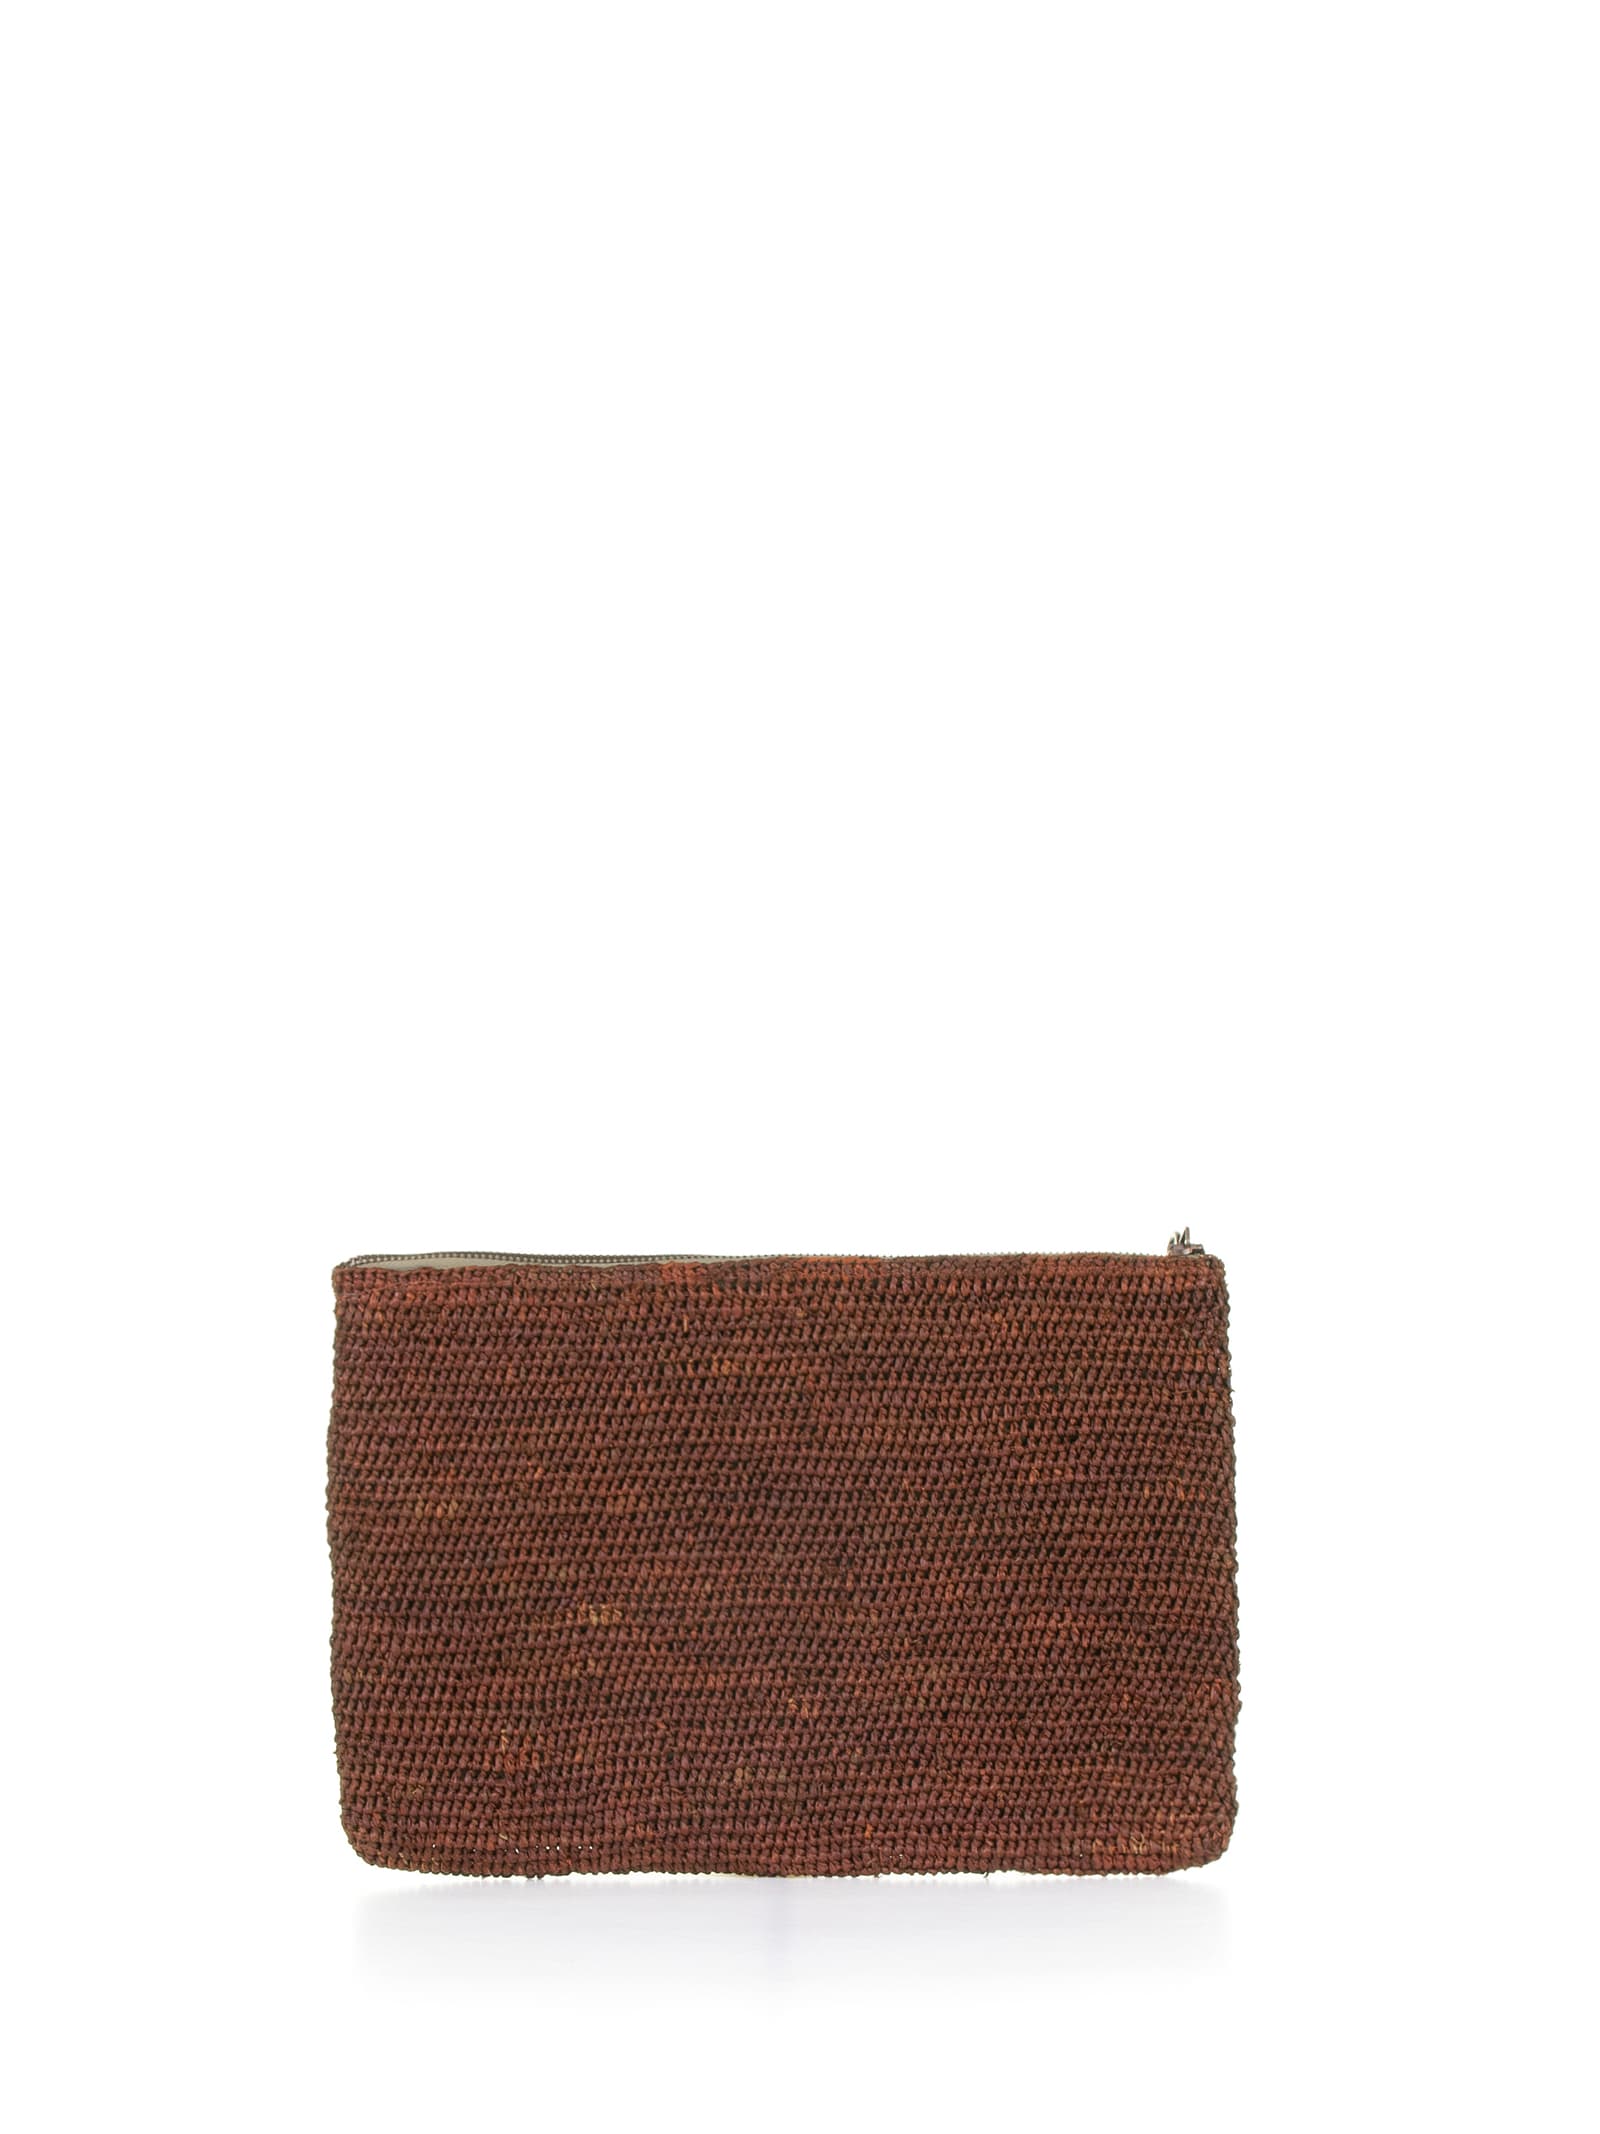 Ampy Clutch Bag In Brown Raffia